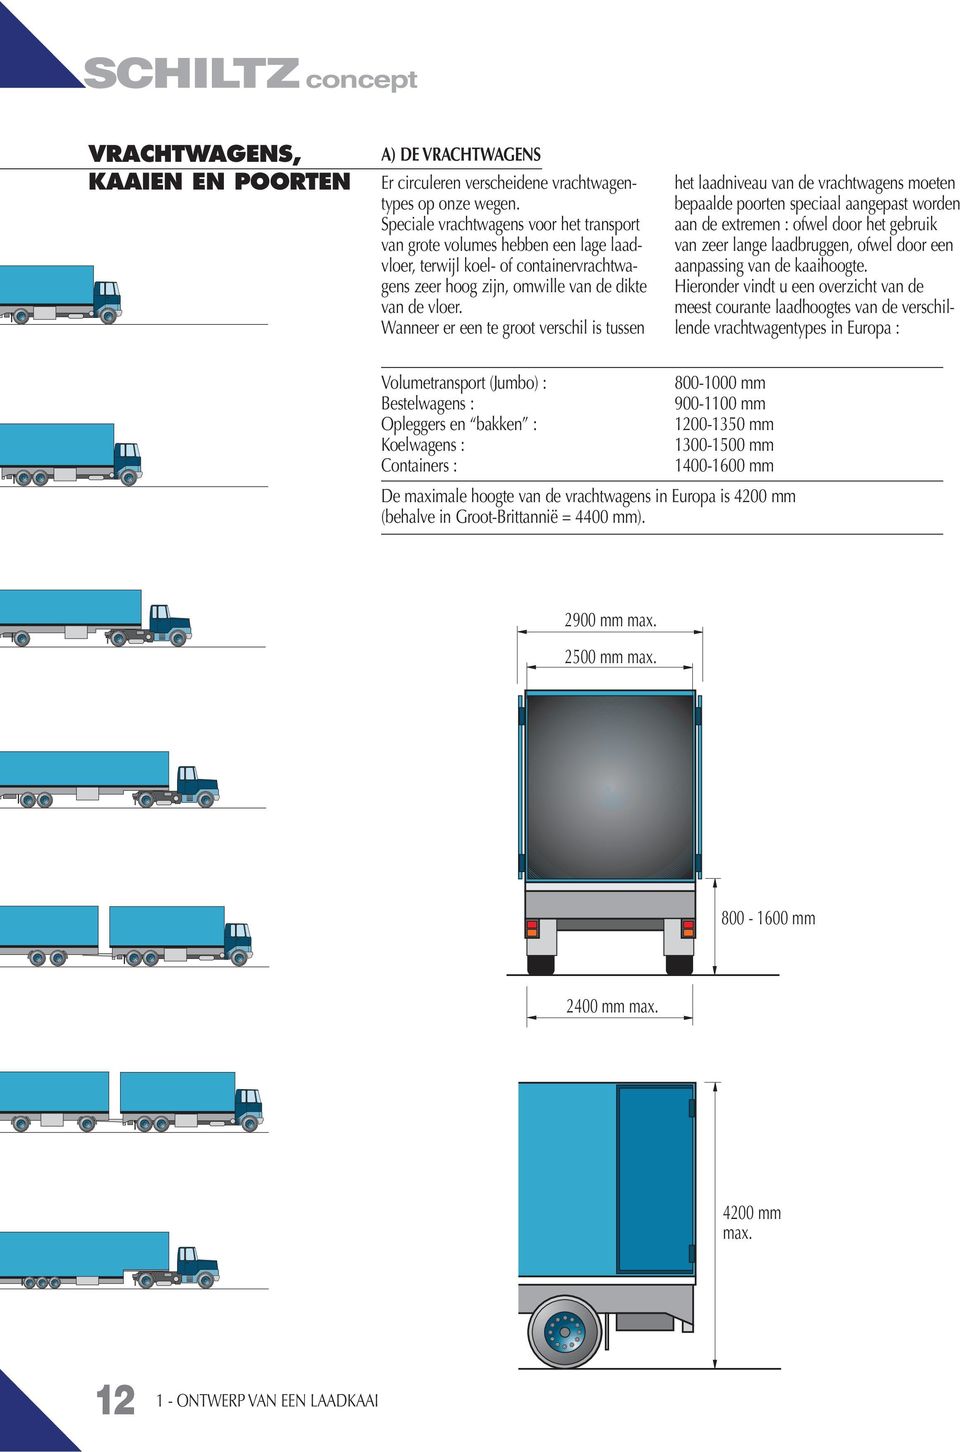 Wanneer er een te groot verschil is tussen het laadniveau van de vrachtwagens moeten bepaalde poorten speciaal aangepast worden aan de extremen : ofwel door het gebruik van zeer lange laadbruggen,